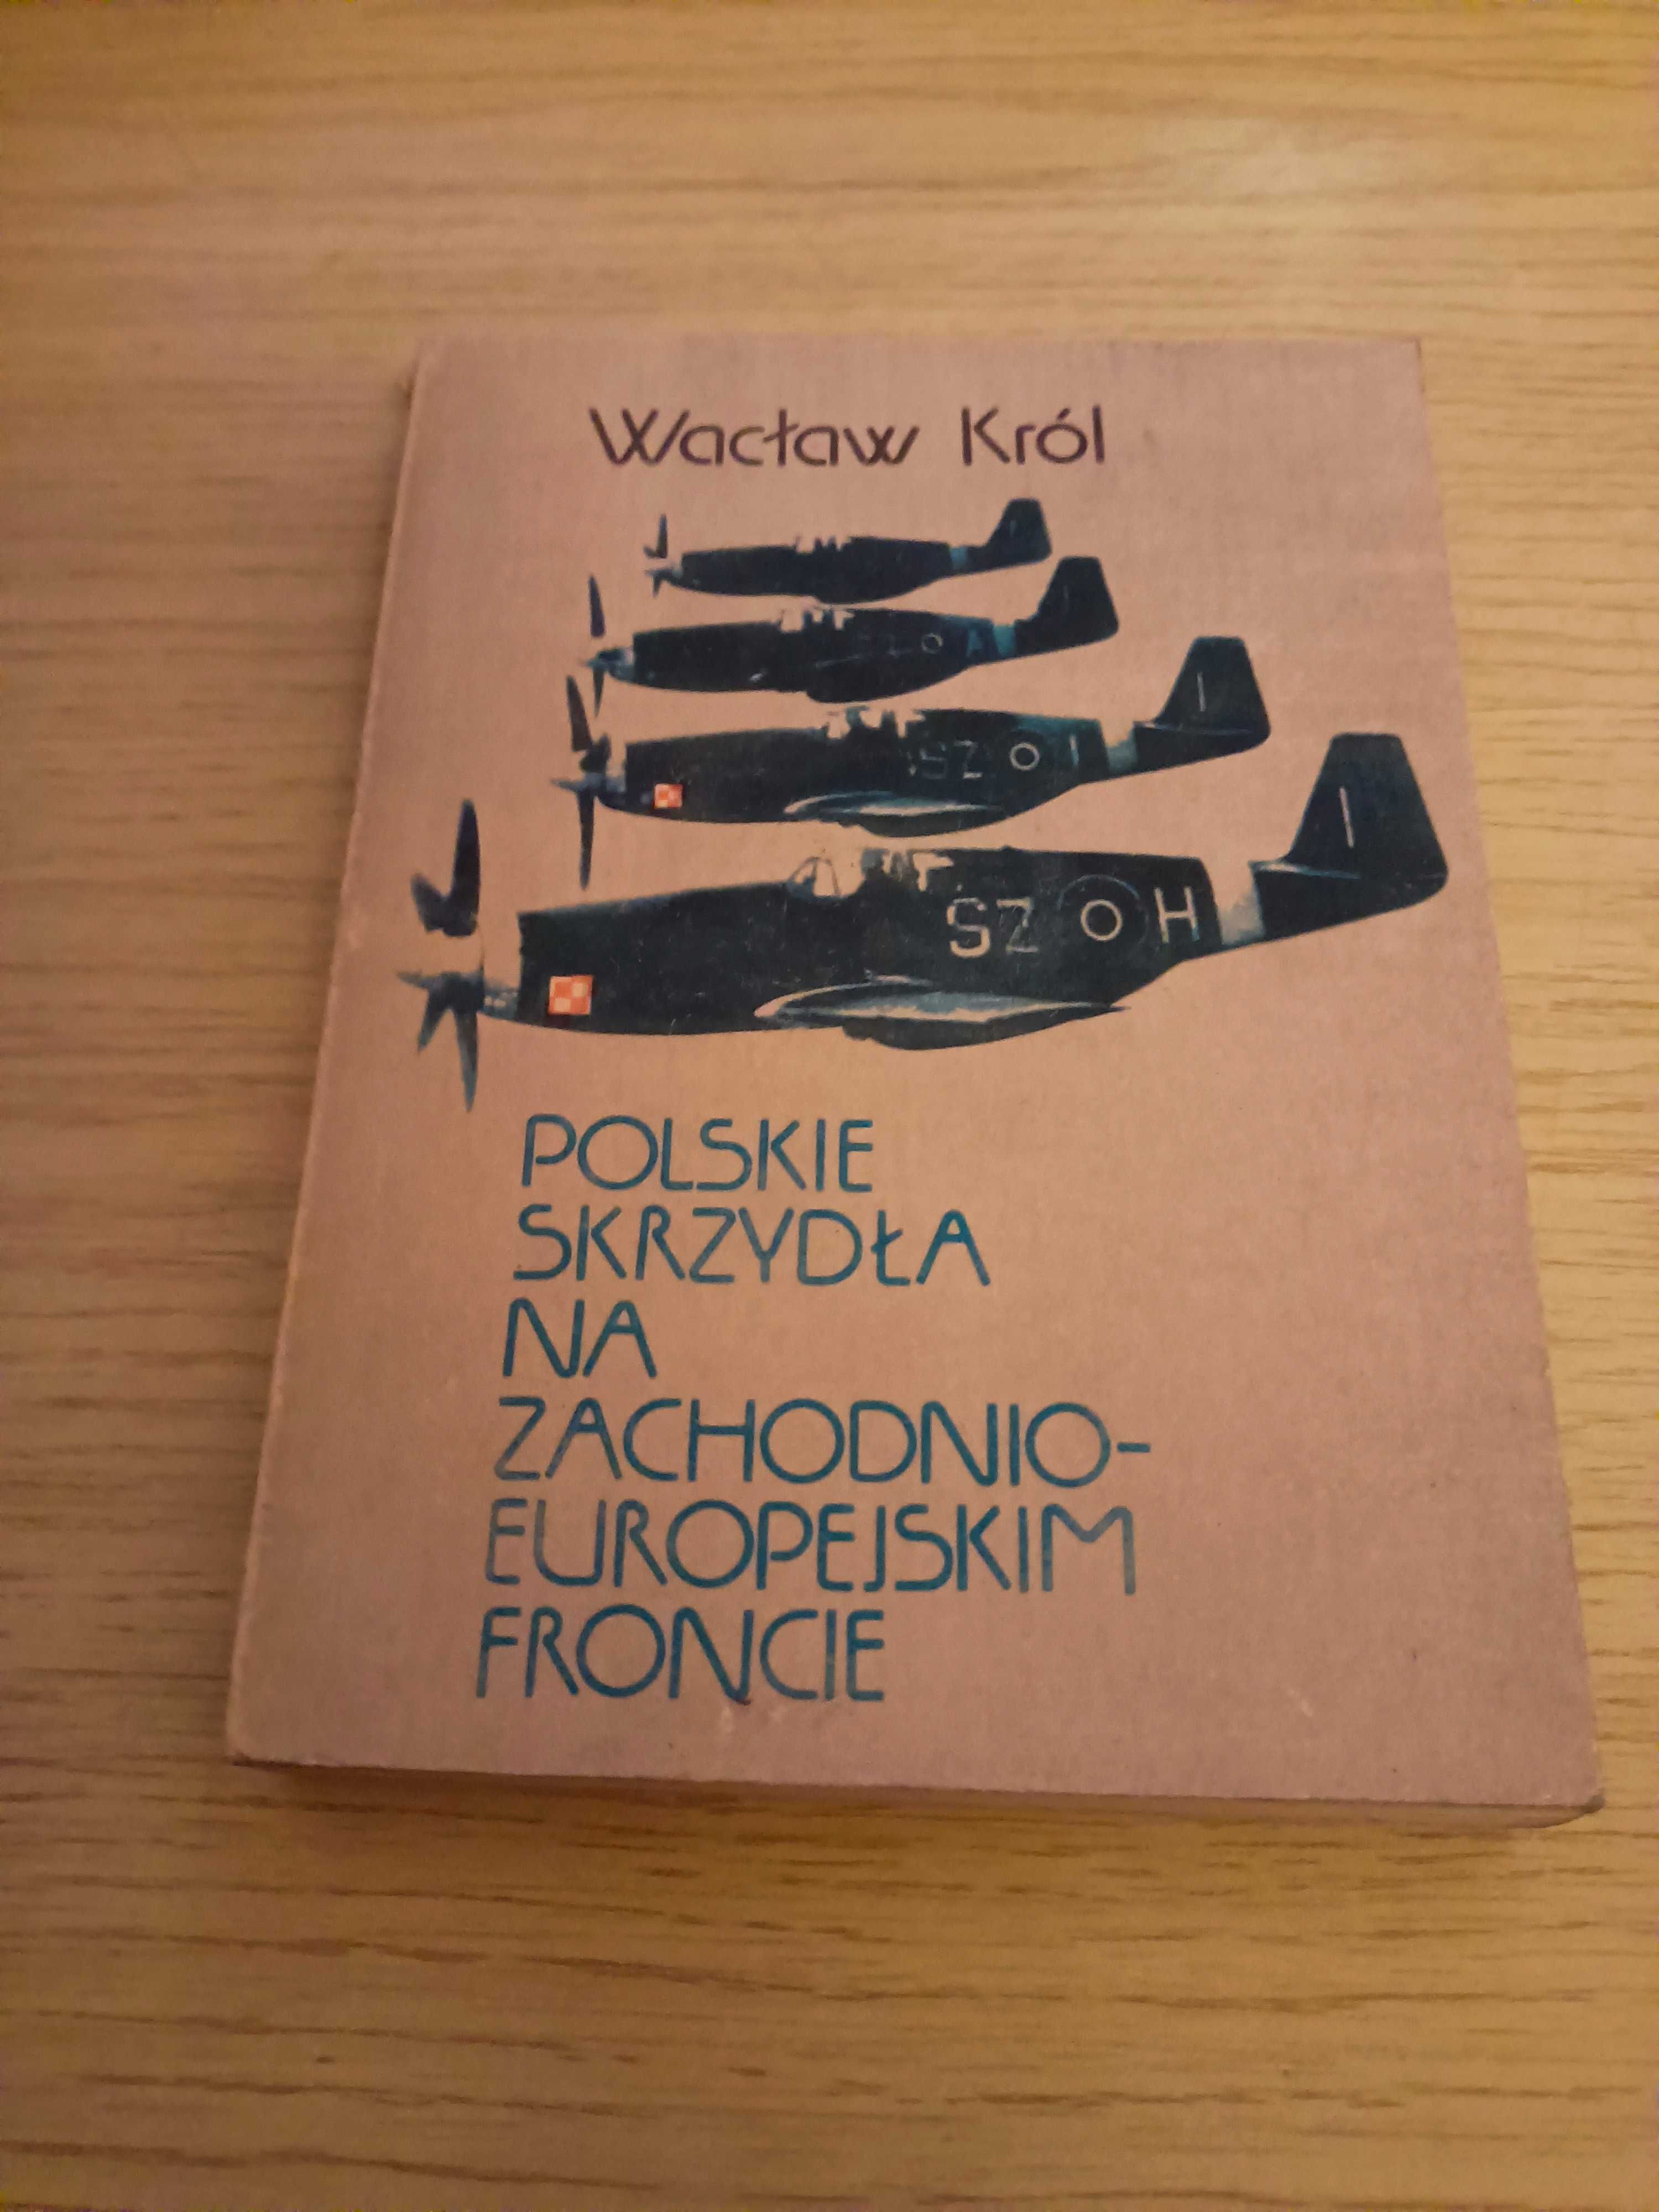 Wacław Król - "Polskie skrzydła na zachodnioeuropejskim froncie"